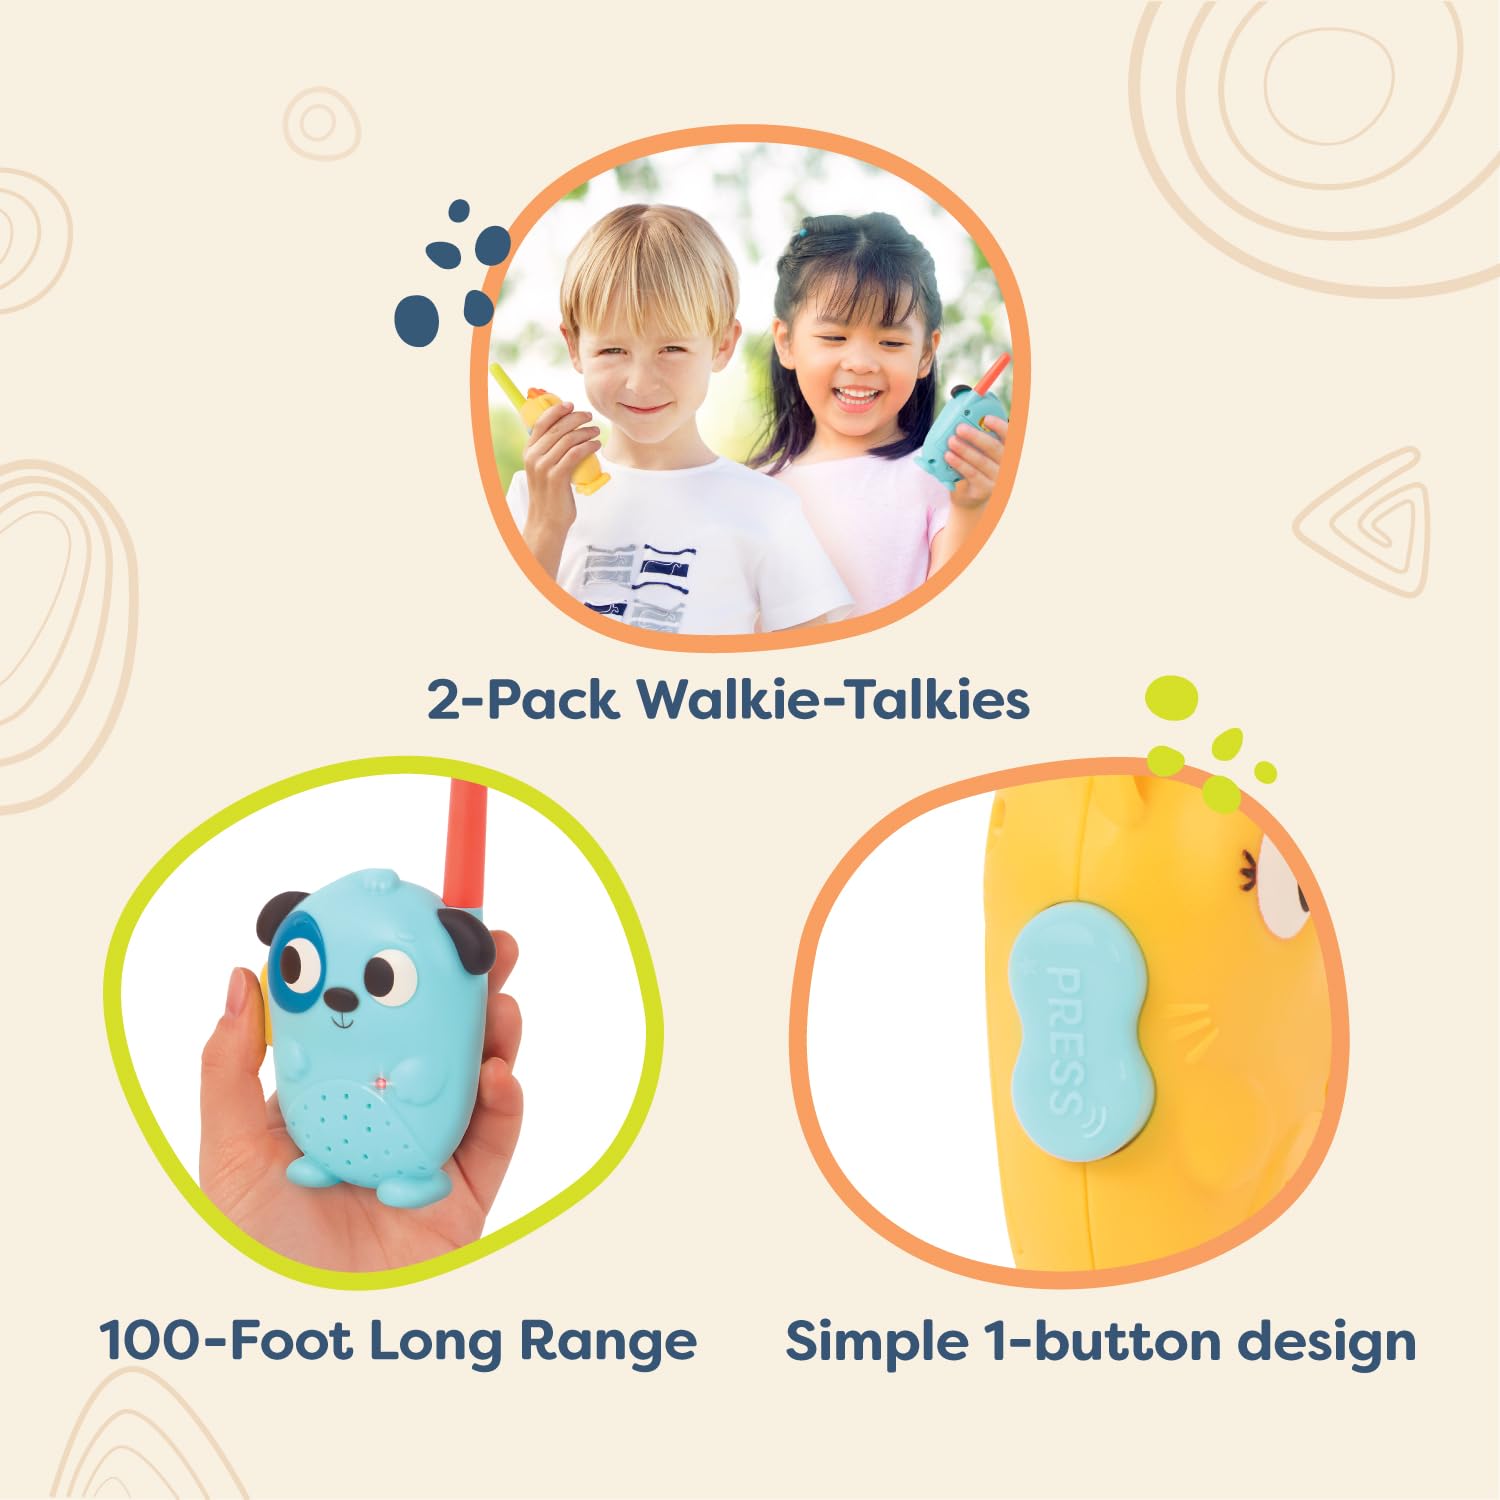 B. Toys- Lolo & Woofer Walkie-Talkies- Walkie Talkie Set – 2-Pack Walkie Talkies – Long 100-Foot Range – Toys for Toddlers, Kids – 3 Years +